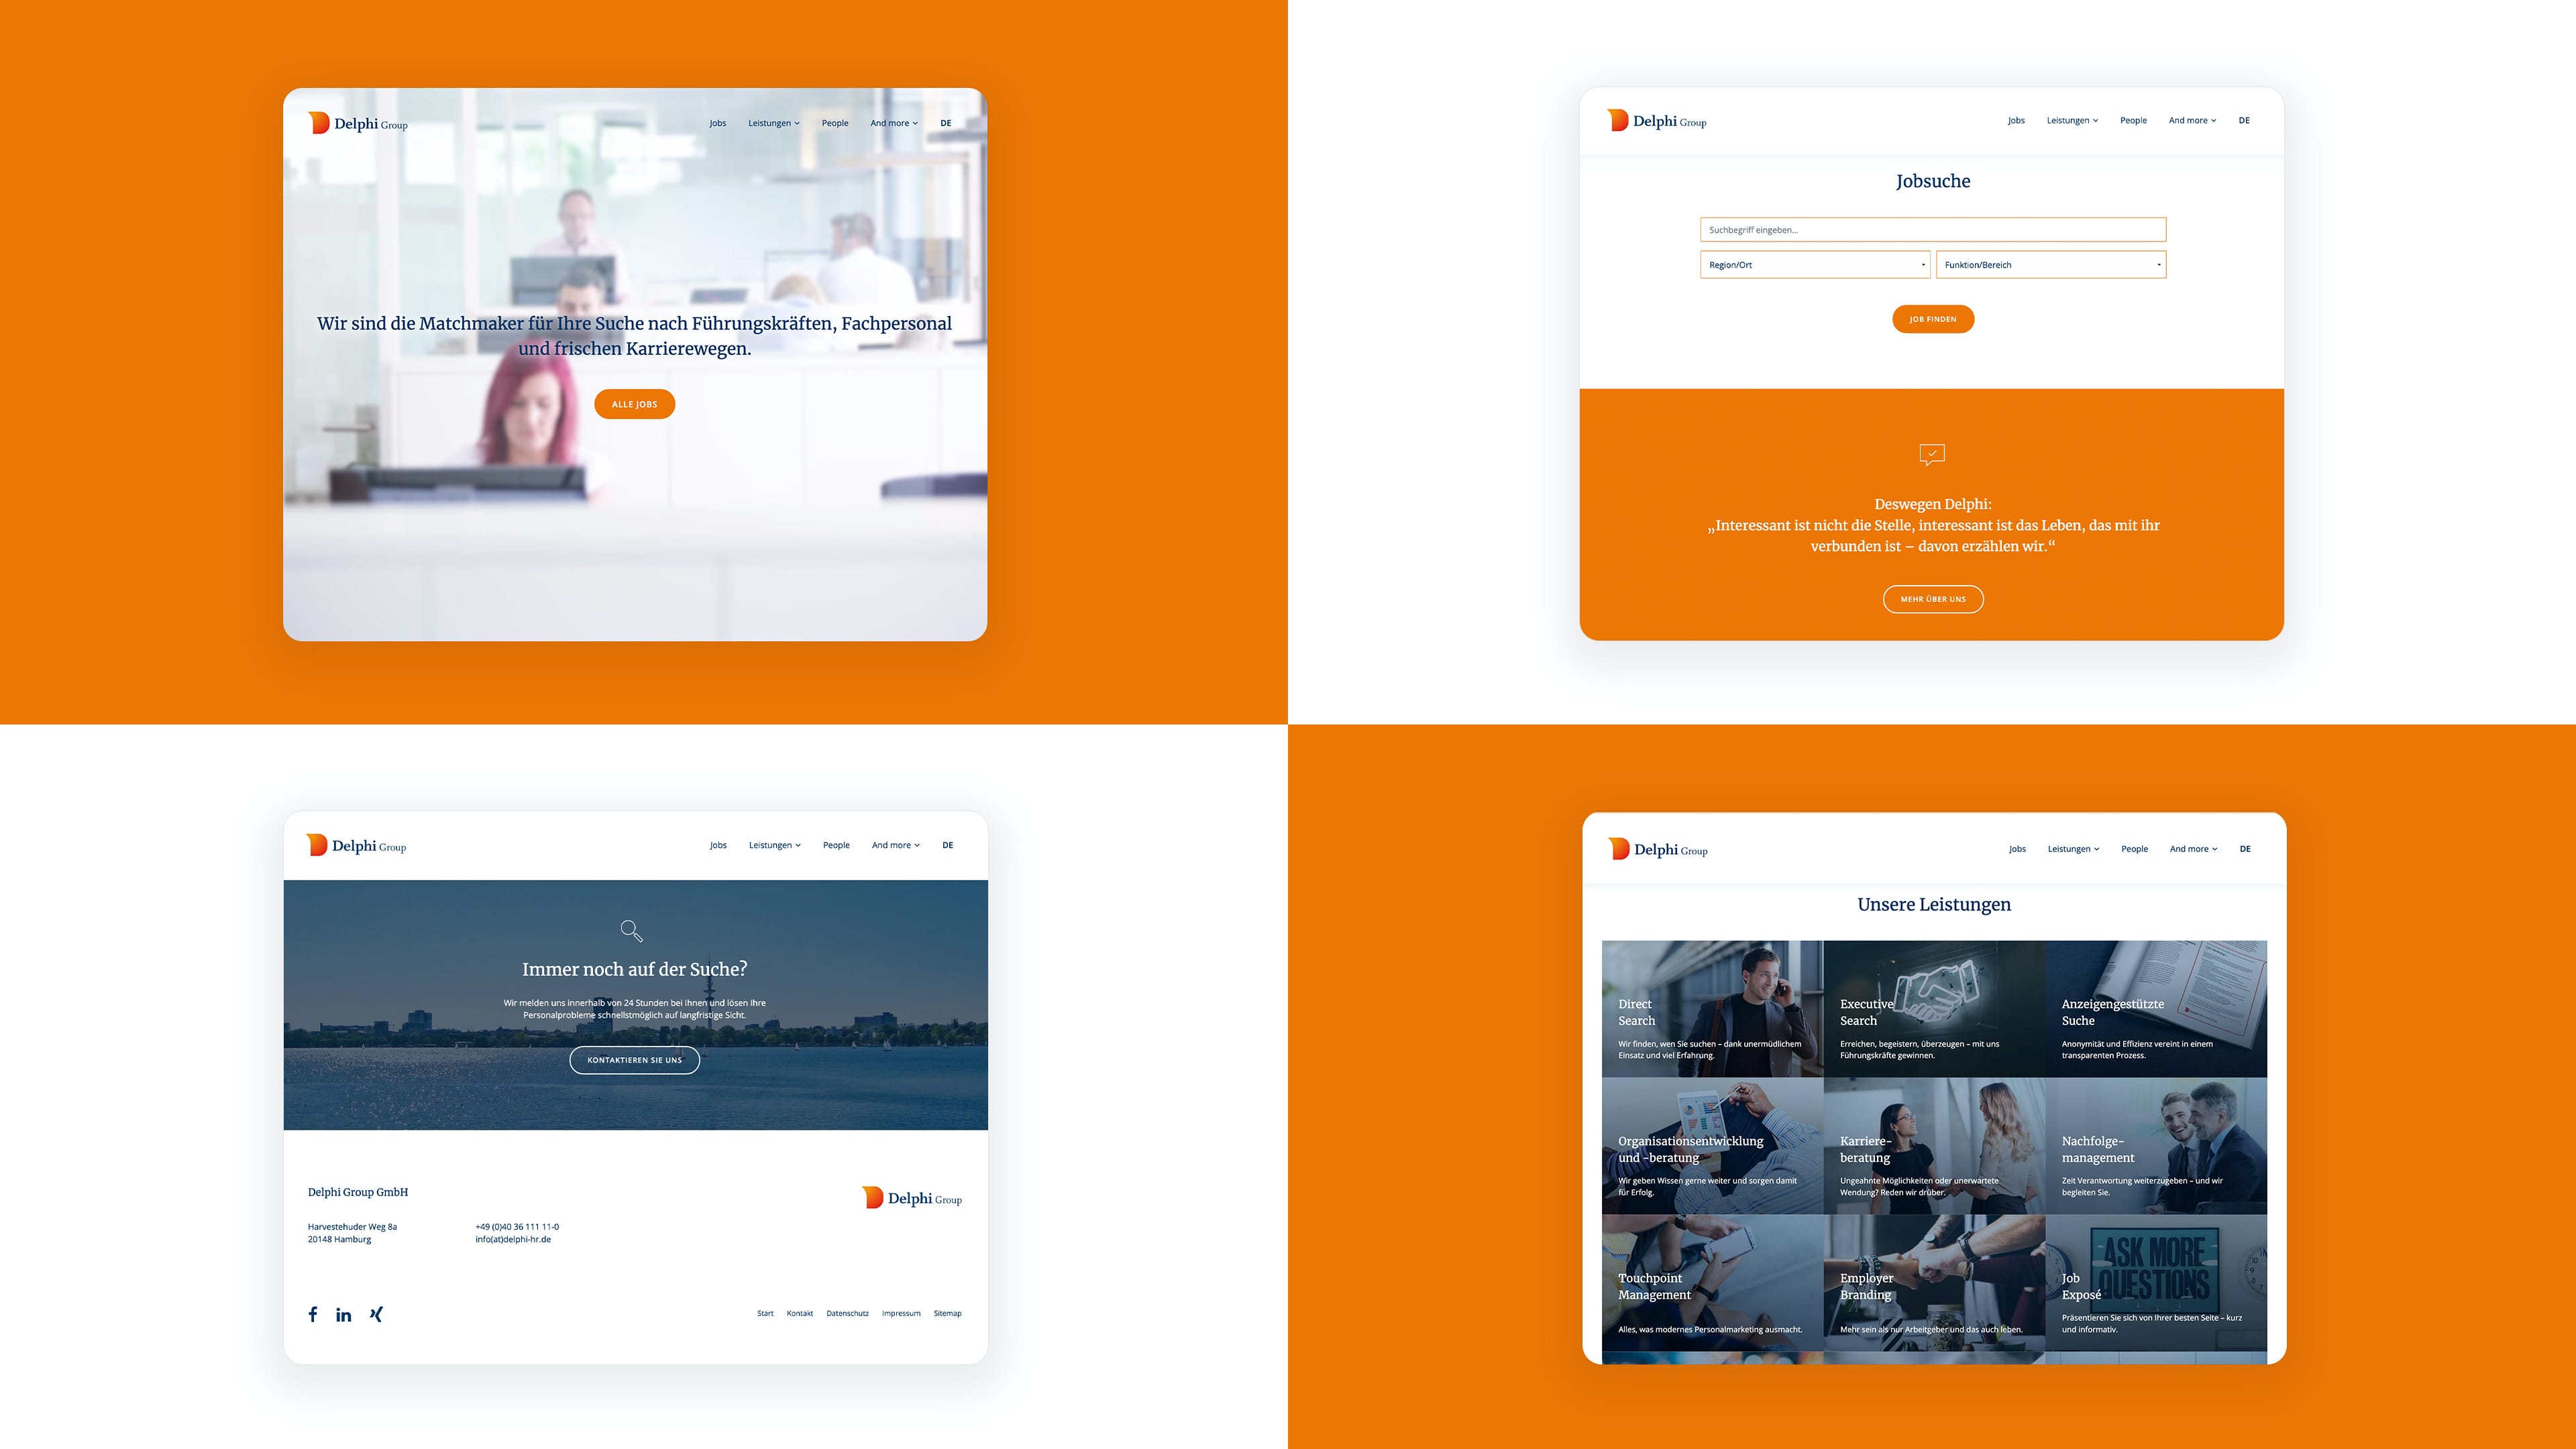 Collage von vier Screenshots der Website der Delphi Group auf orangenem und weißem Hintergrund